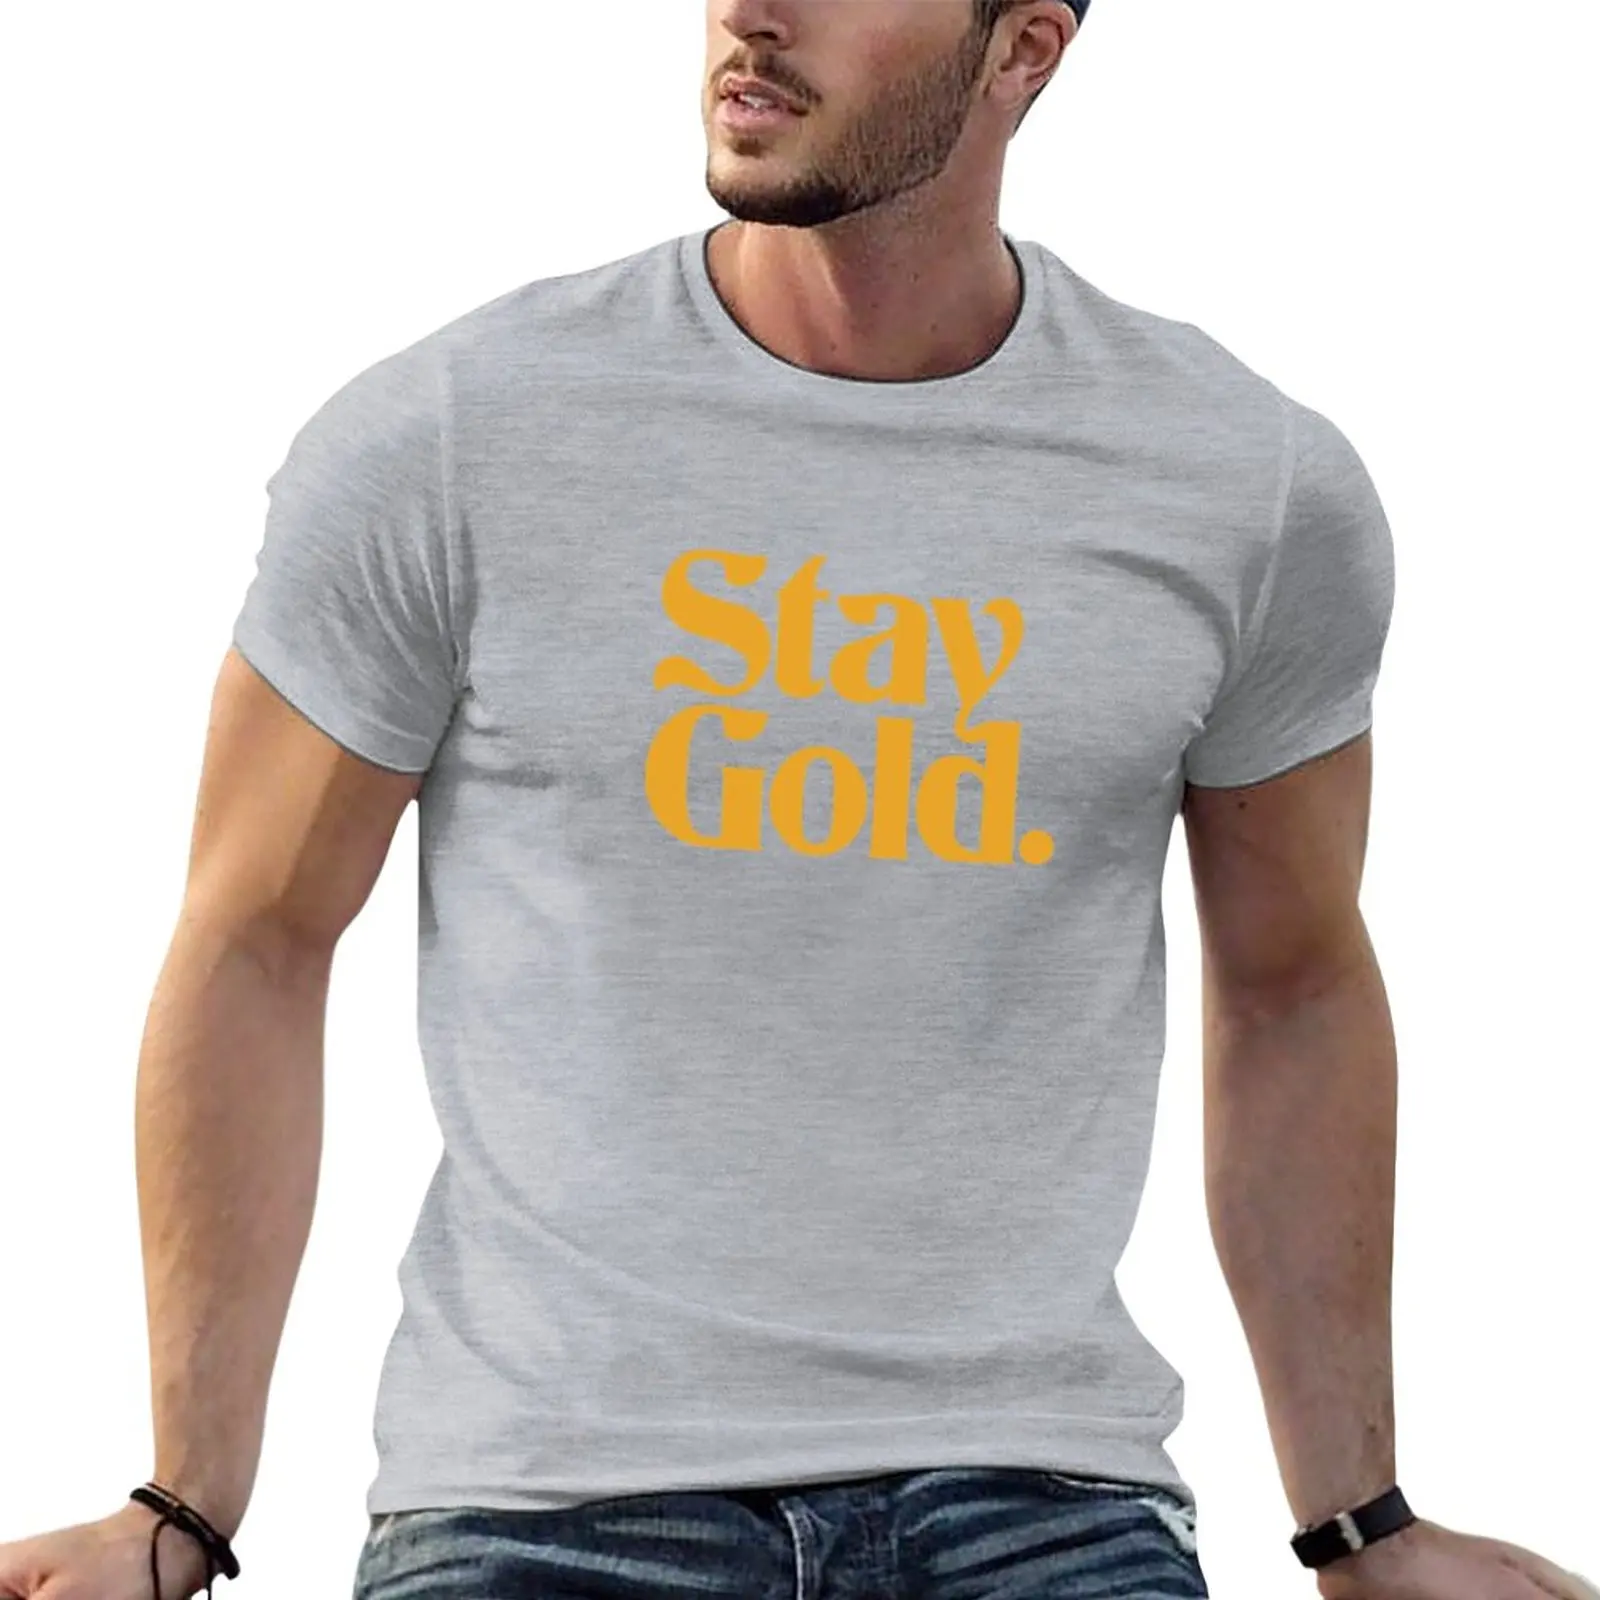 

Мужская футболка с надписью Stay Gold футболка в стиле фанки